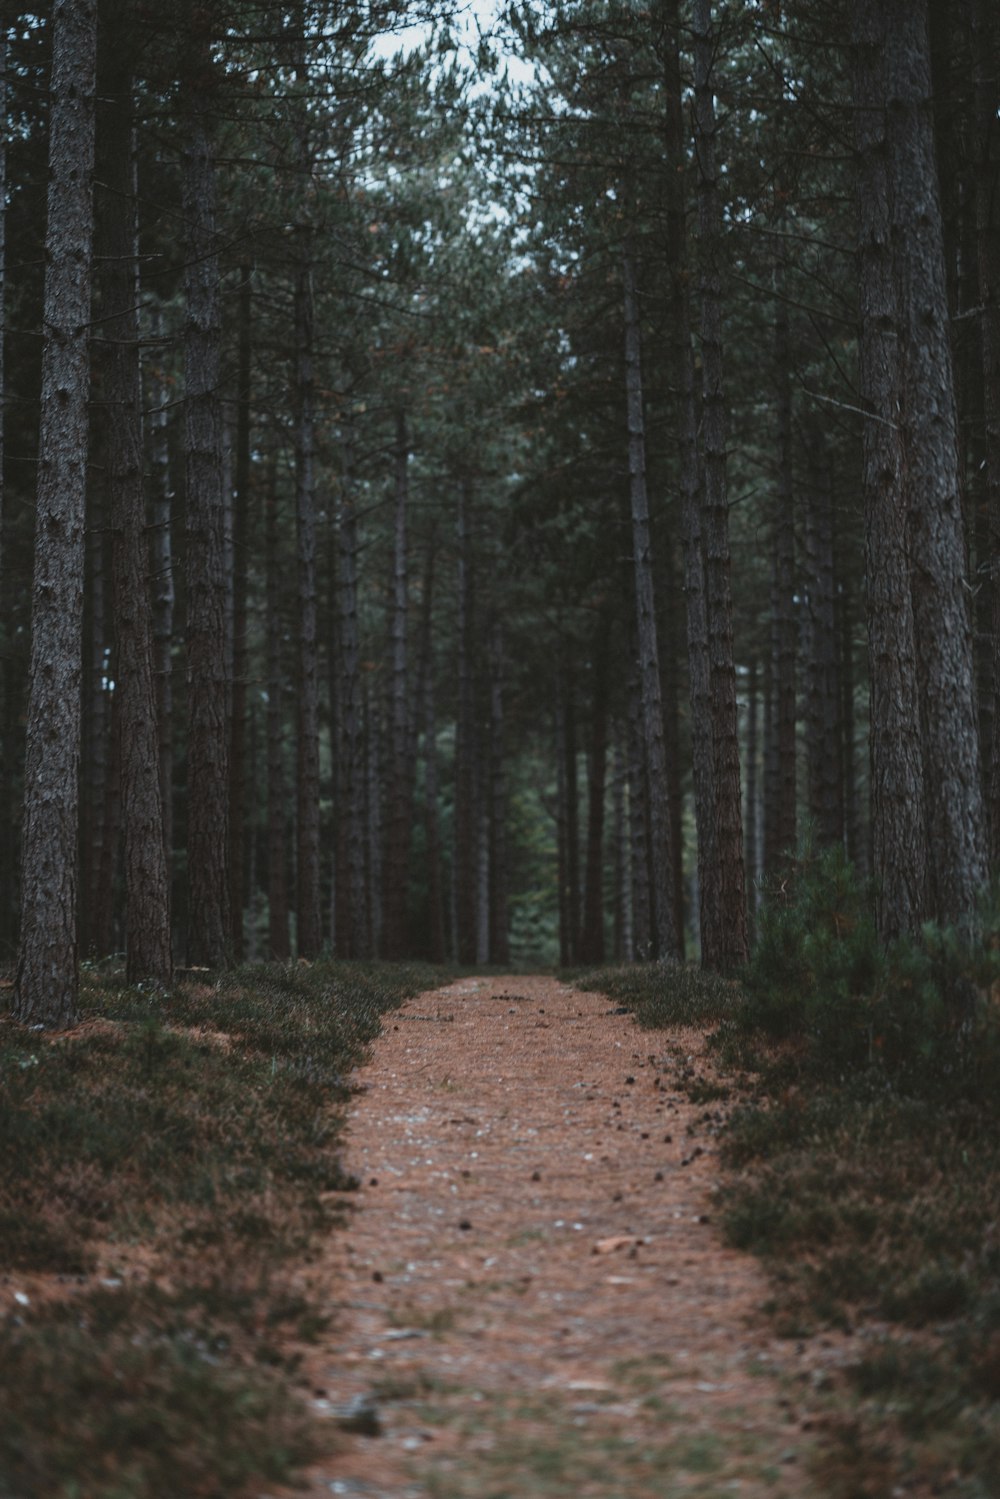 brown pathway between trees